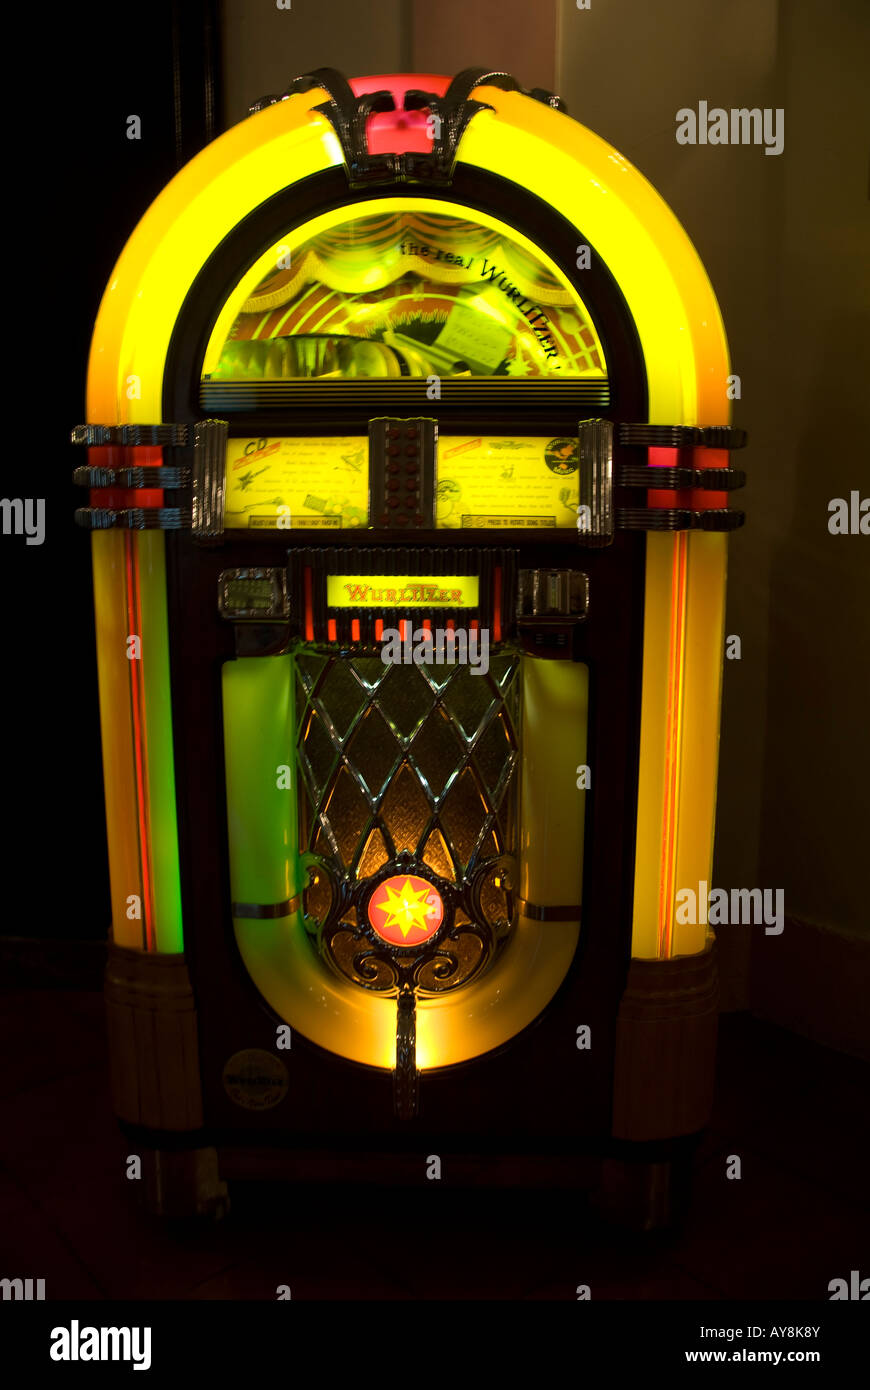 Jukebox, music machine Stock Photo